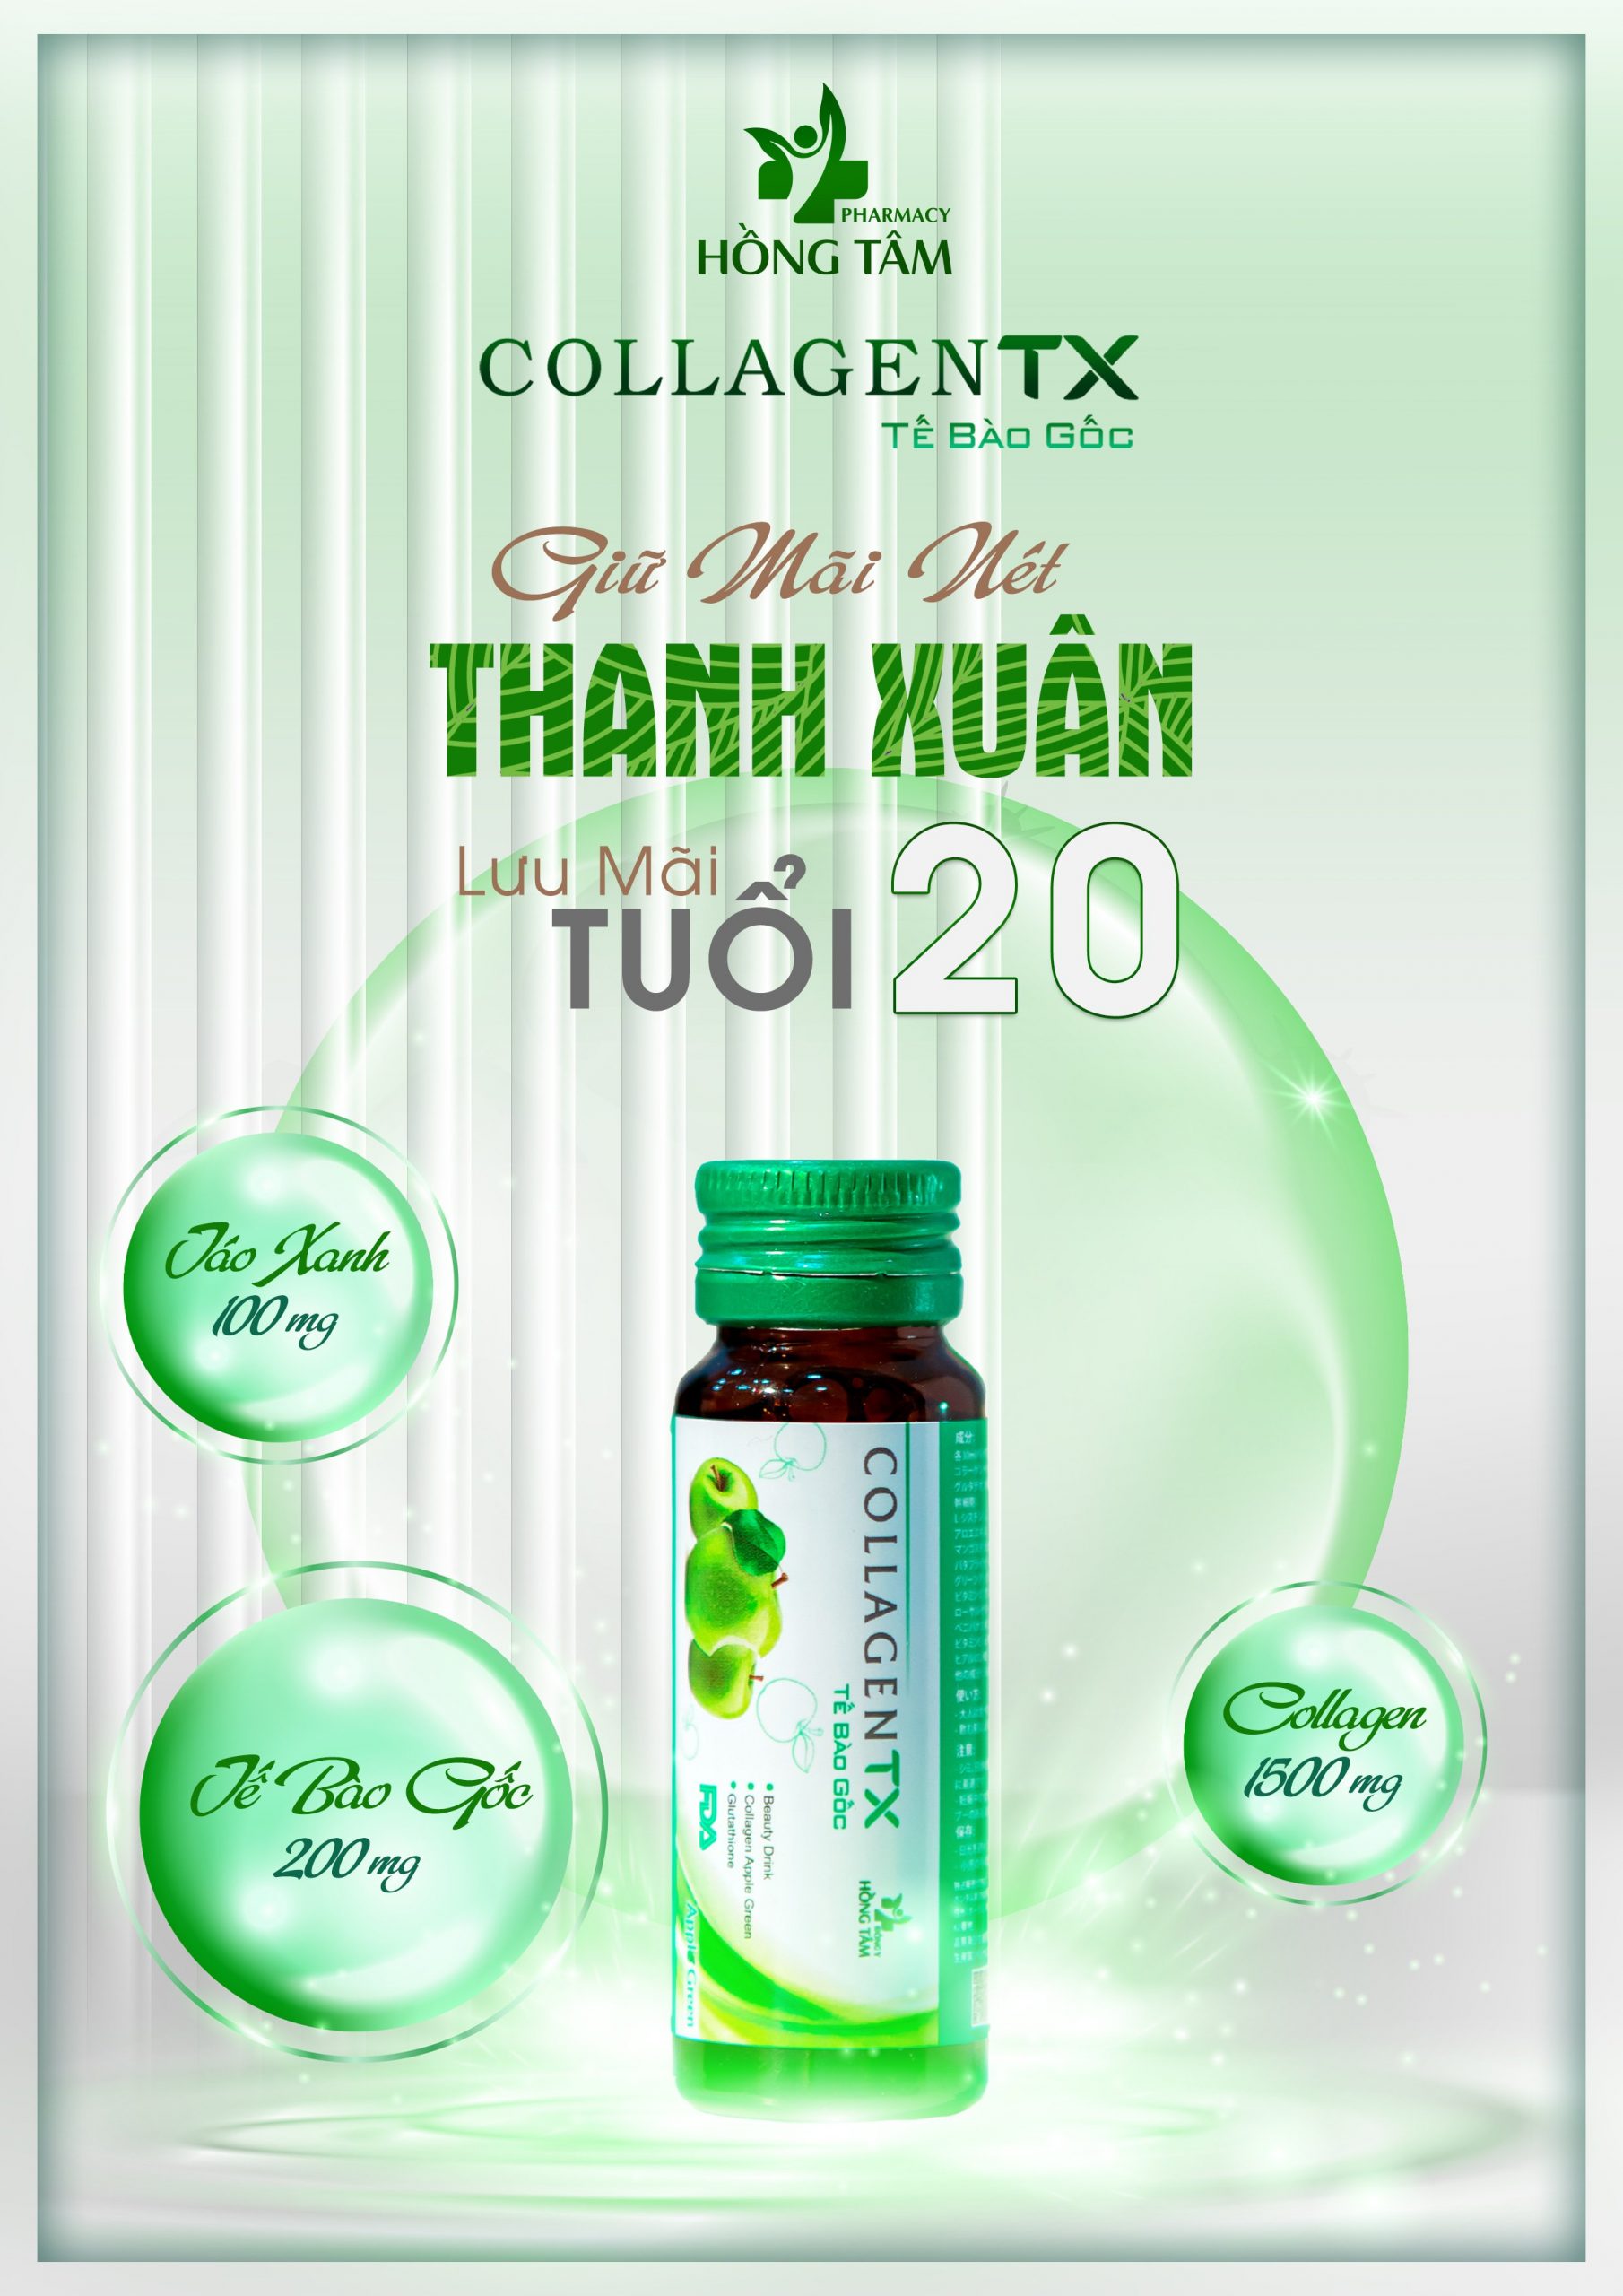 Giới thiệu về thương hiệu của Collagen TX Tế Bào Gốc và Collagen Nucos Spa 13500